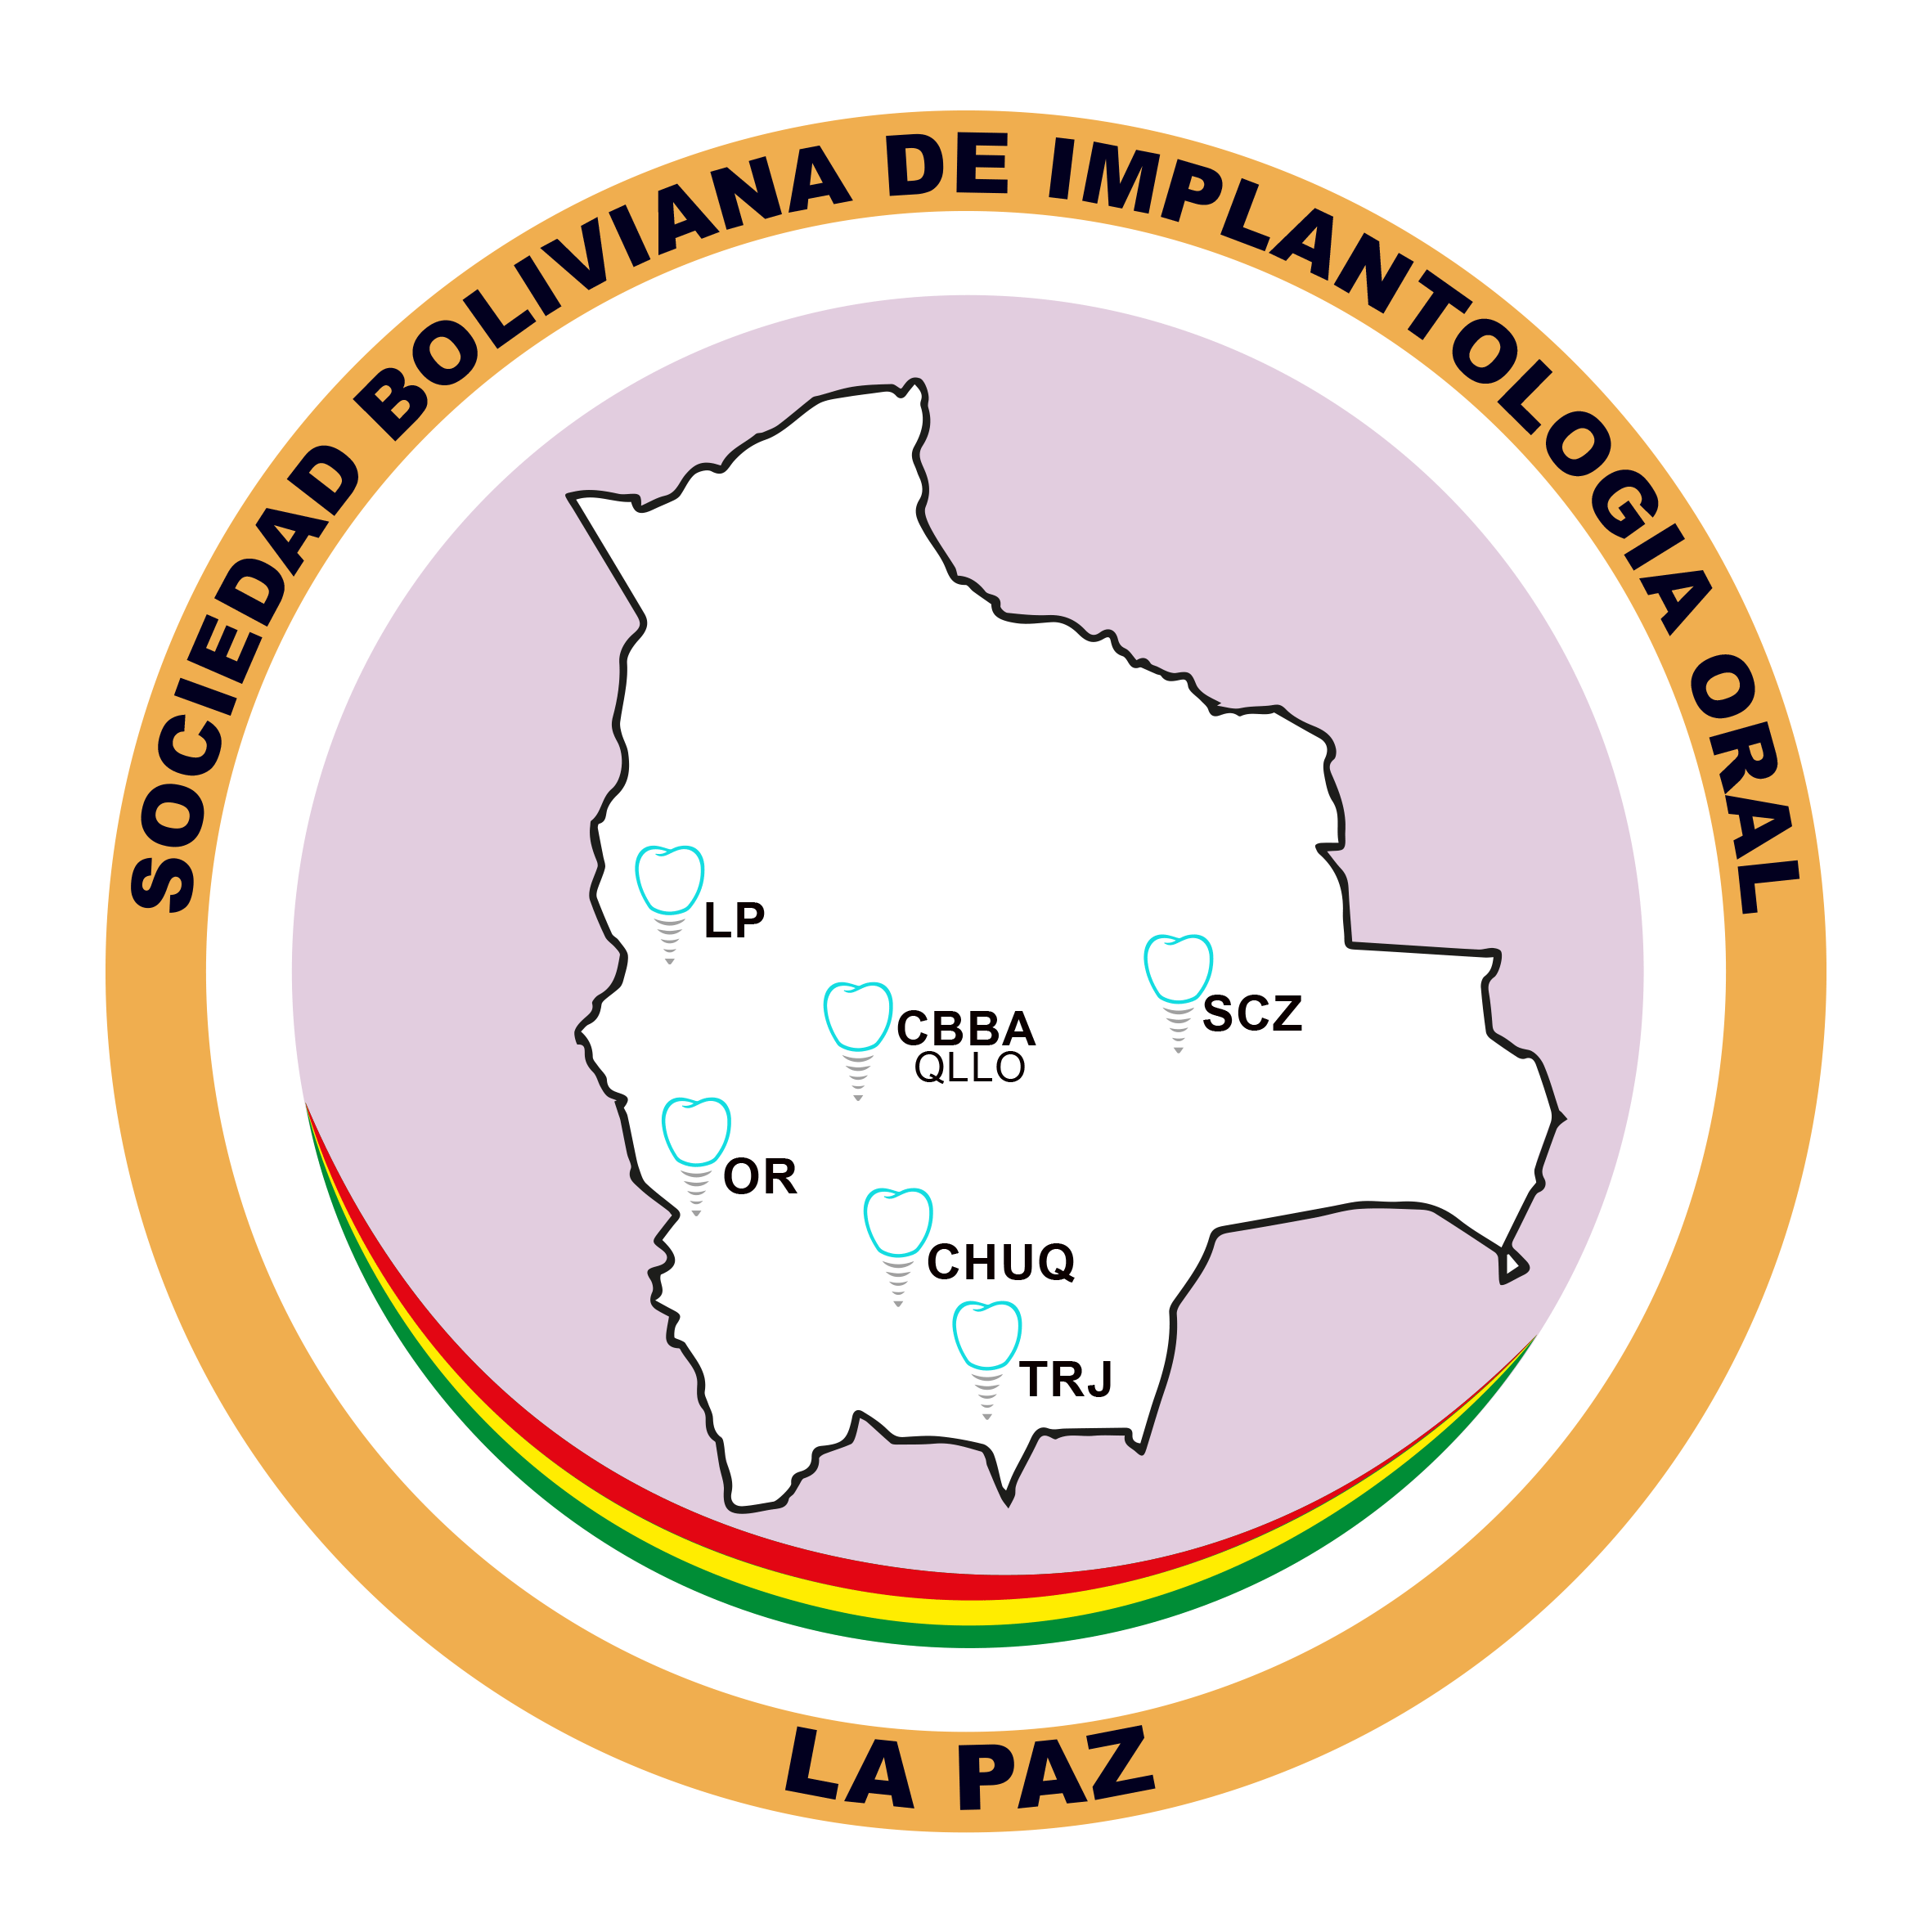 Sociedad Bolivia de Implatologia Oral